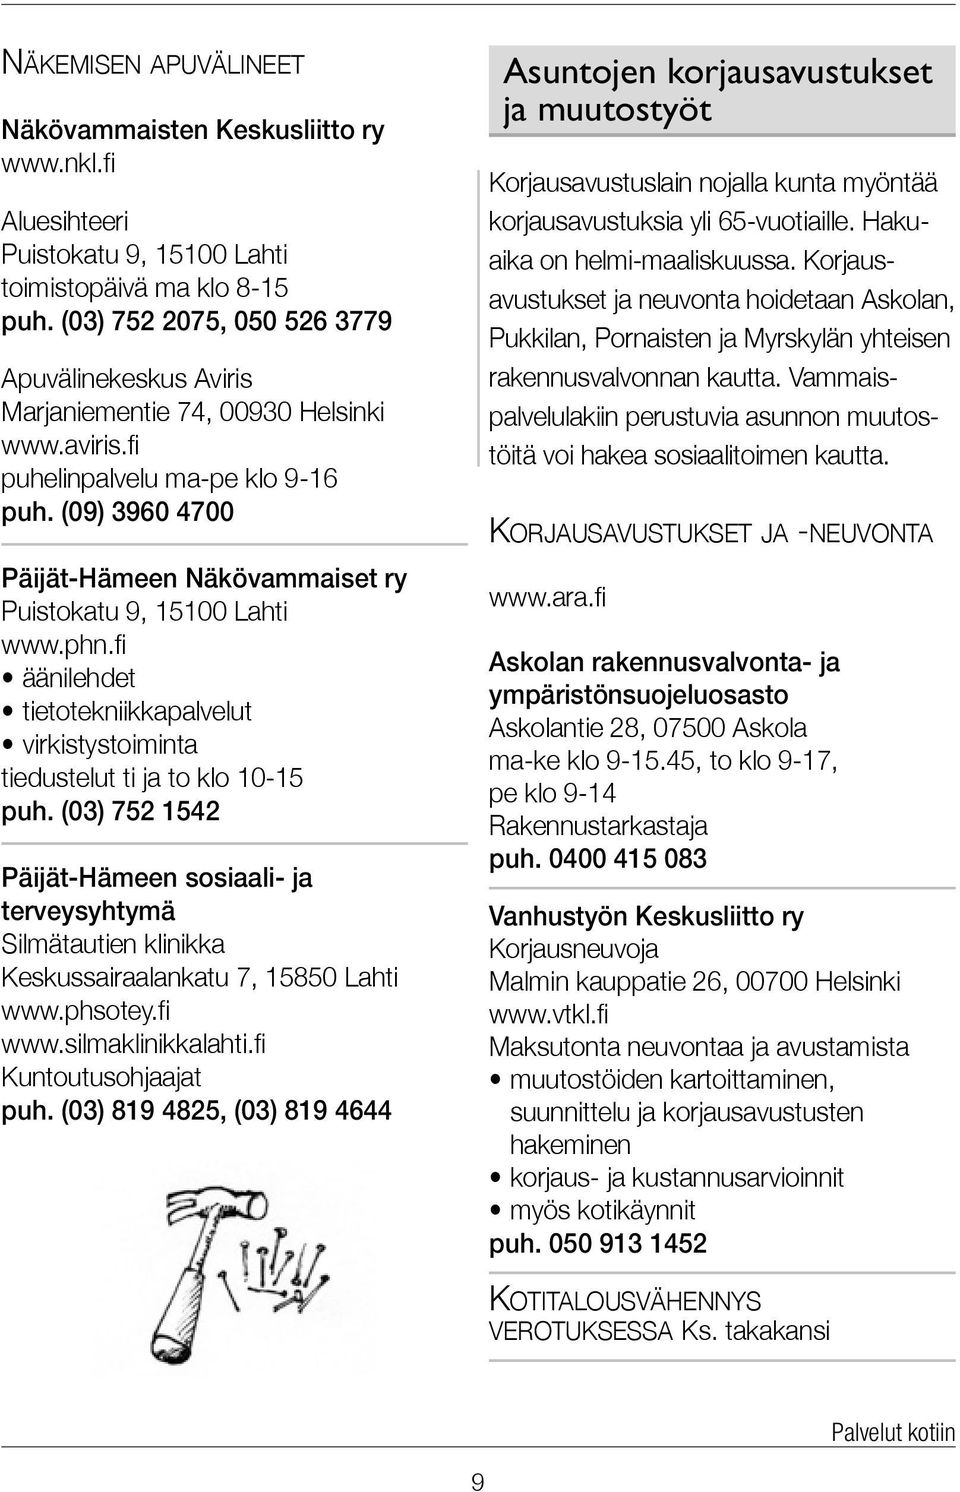 (09) 3960 4700 Päijät-Hämeen Näkövammaiset ry Puistokatu 9, 15100 Lahti www.phn.fi äänilehdet tietotekniikkapalvelut virkistystoiminta tiedustelut ti ja to klo 10-15 puh.